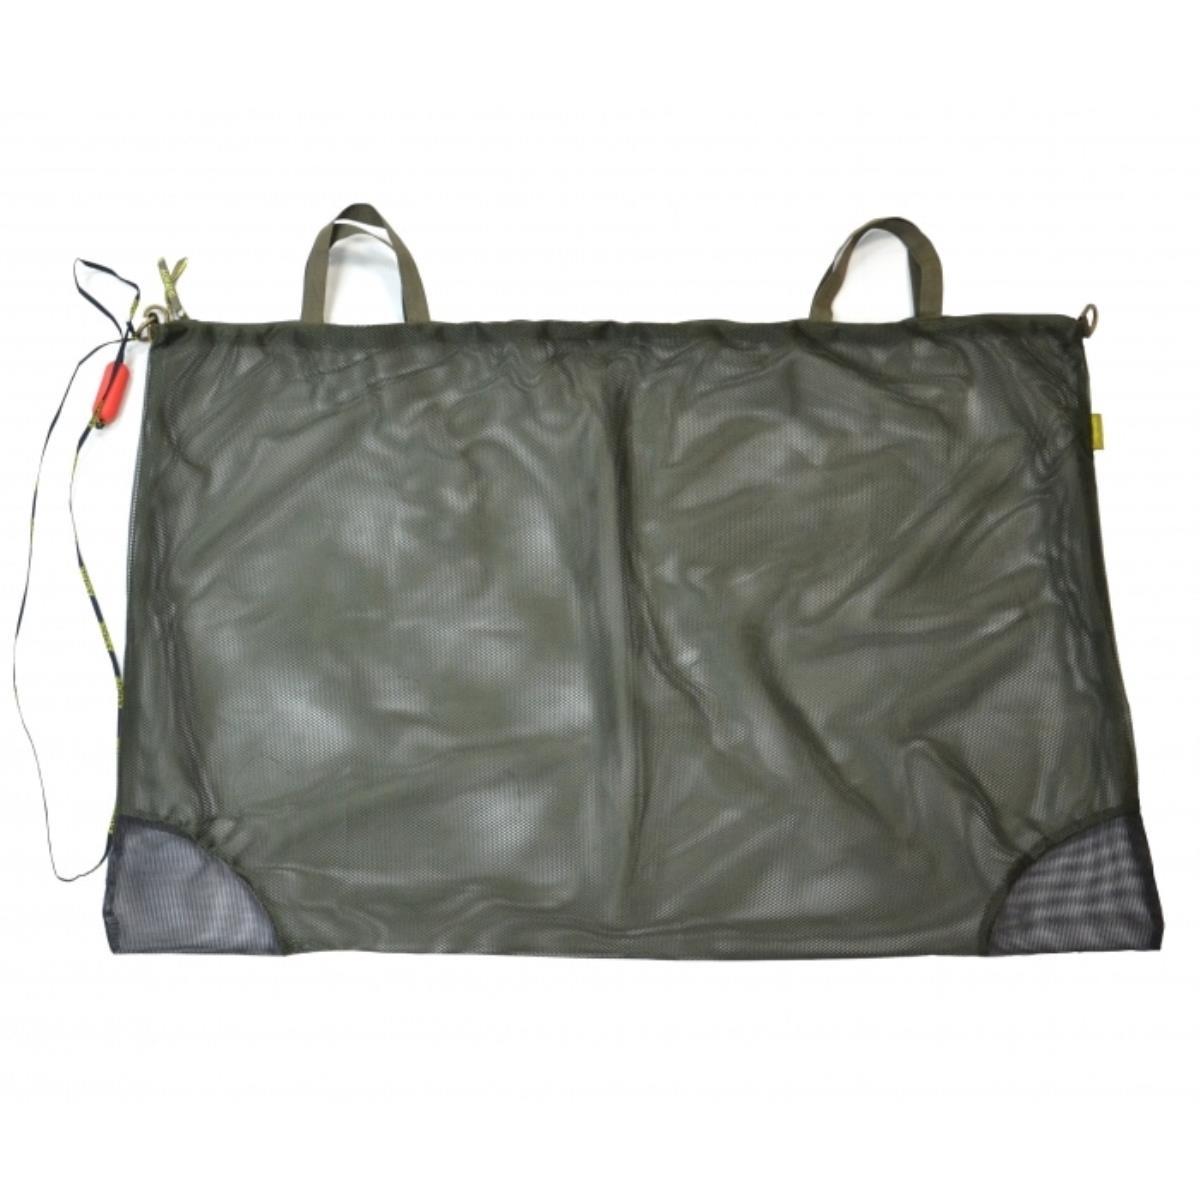 Мешок для хранения рыбы МР-02 AQUATIC мешок для стирки белья доляна 50×60 см мелкая сетка цвет чёрный